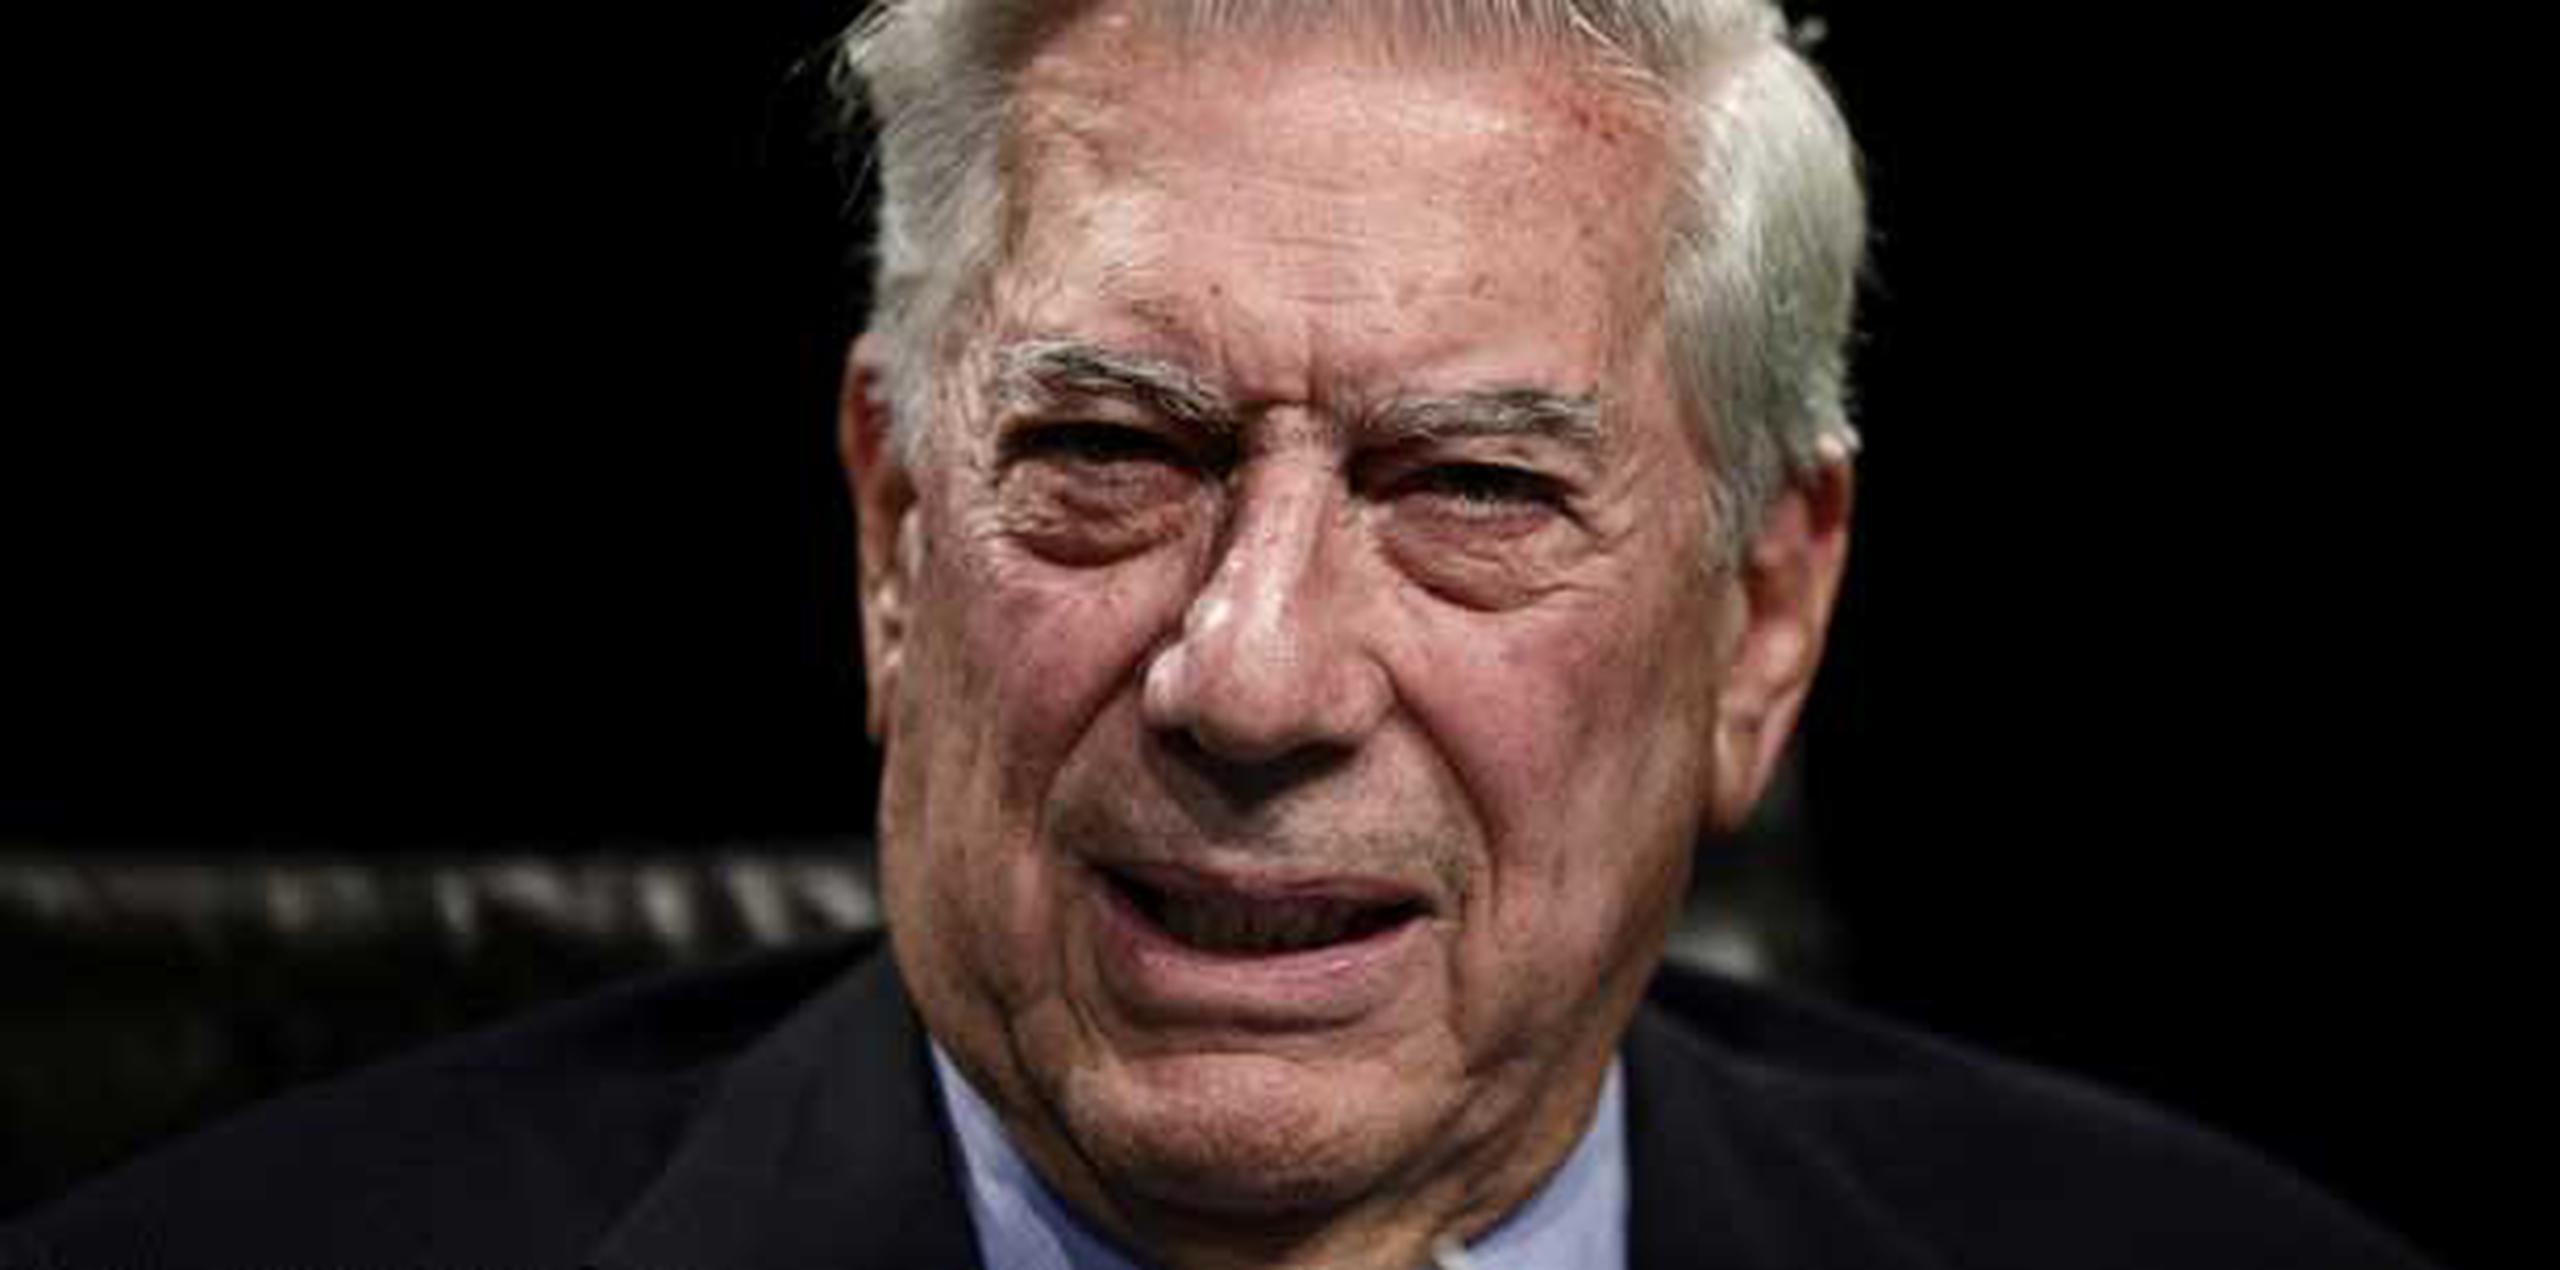 Mario Vargas Llosa se mostró muy crítico con el mandatario ecuatoriano Rafael Correa por su actitud condescendiente hacia Snowden.  (AP/Daniel Ochoa de Olza)